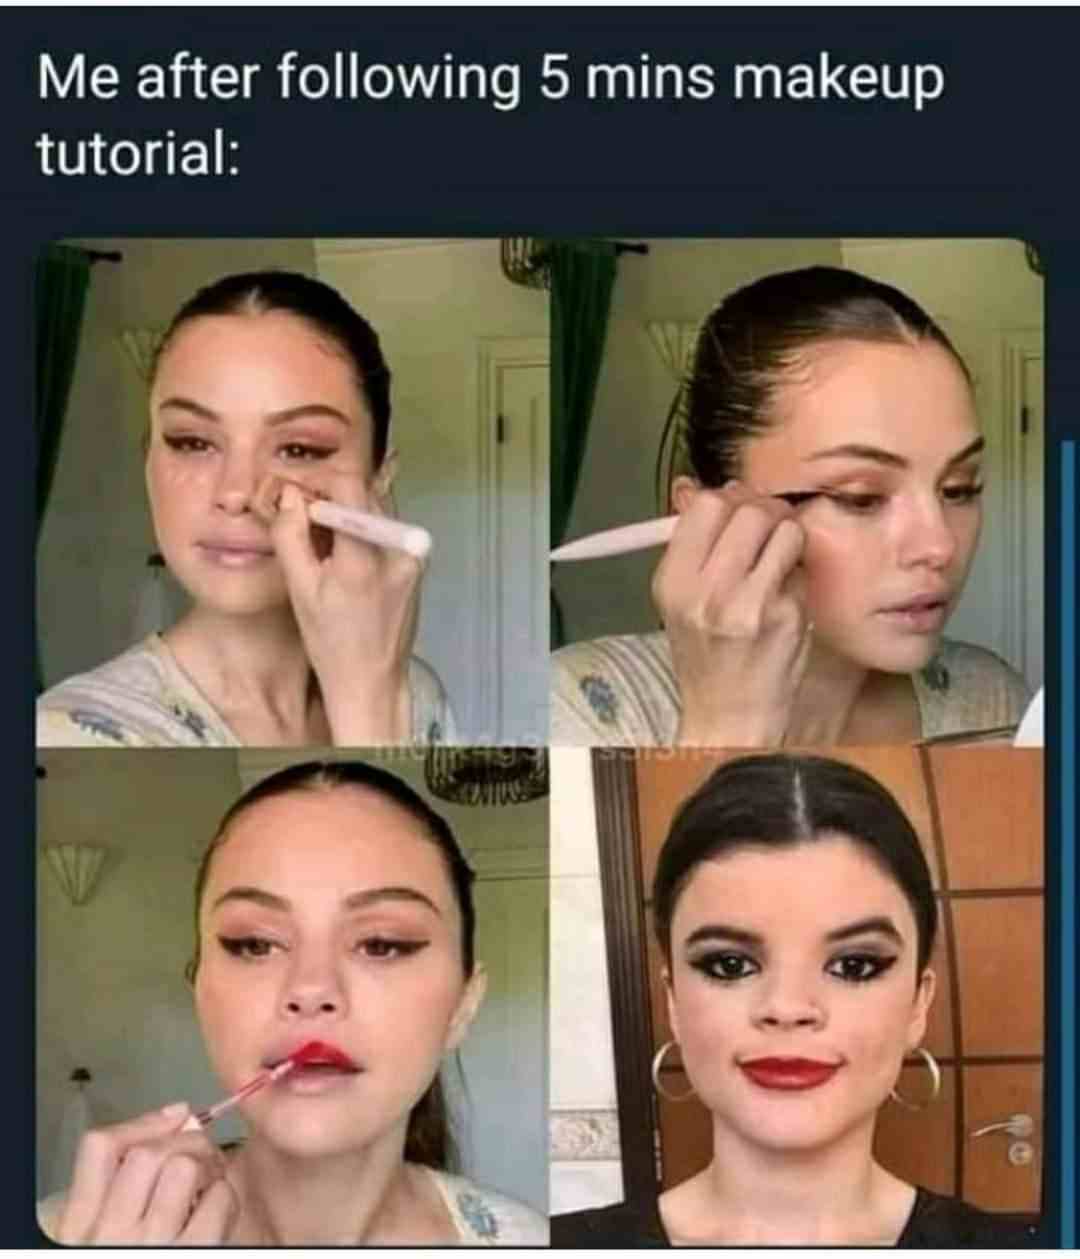 Me after following 5 mins makeup tutorial